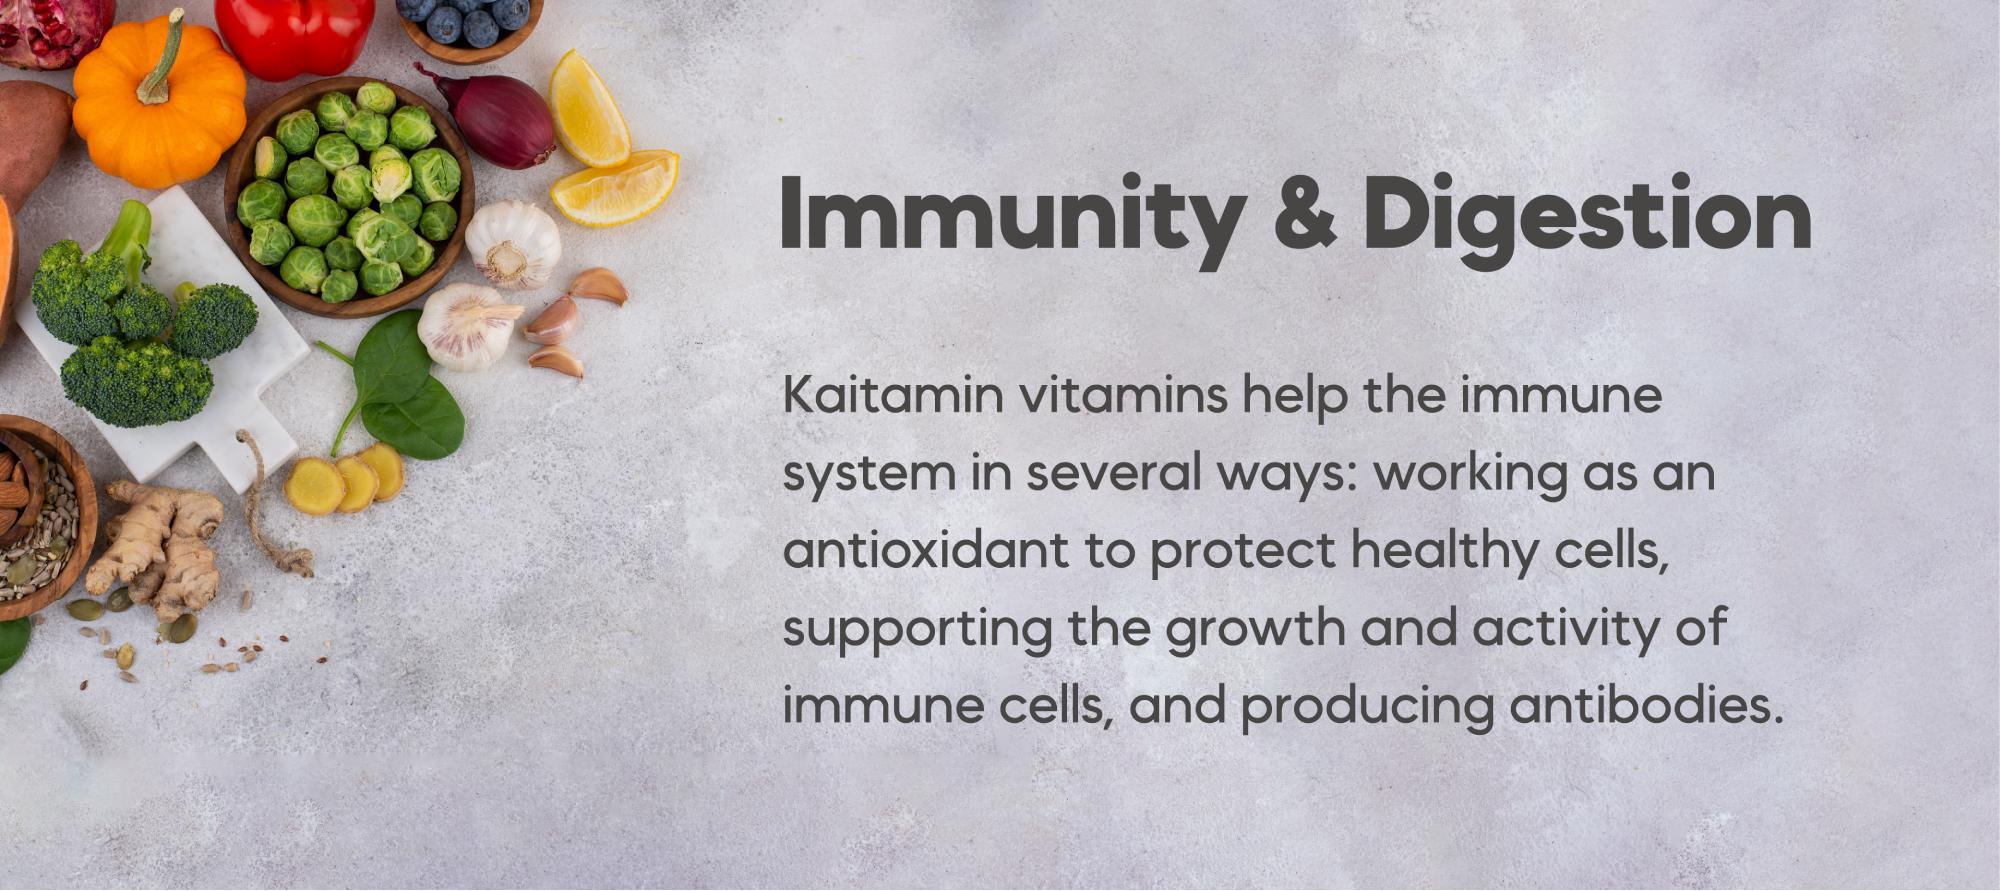 Immunity & Digestion